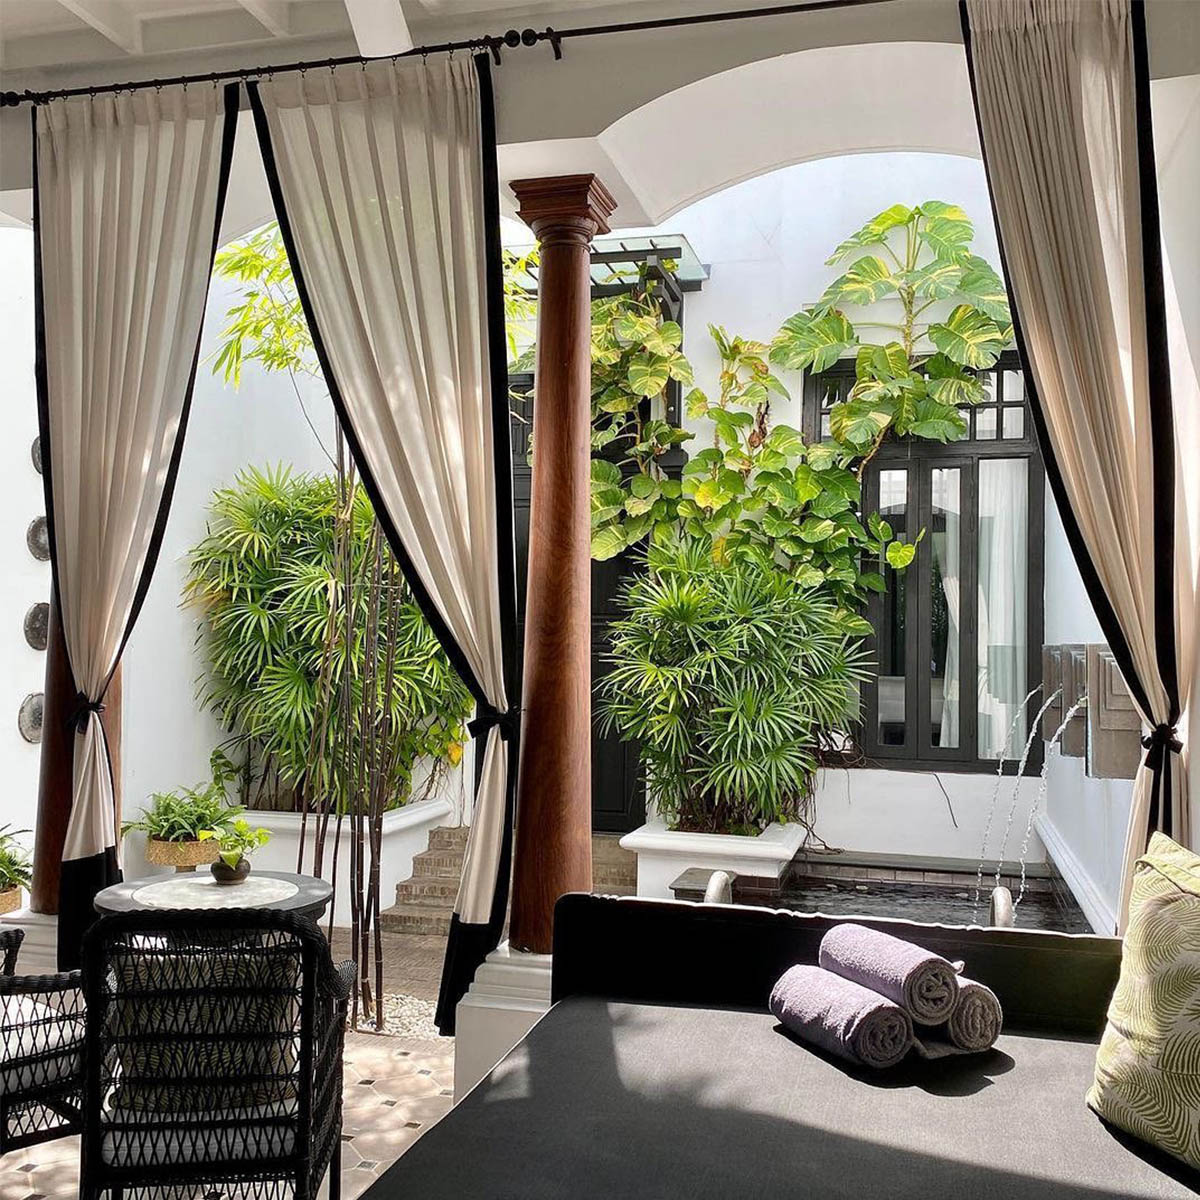 Room in The Siam in Bangkok